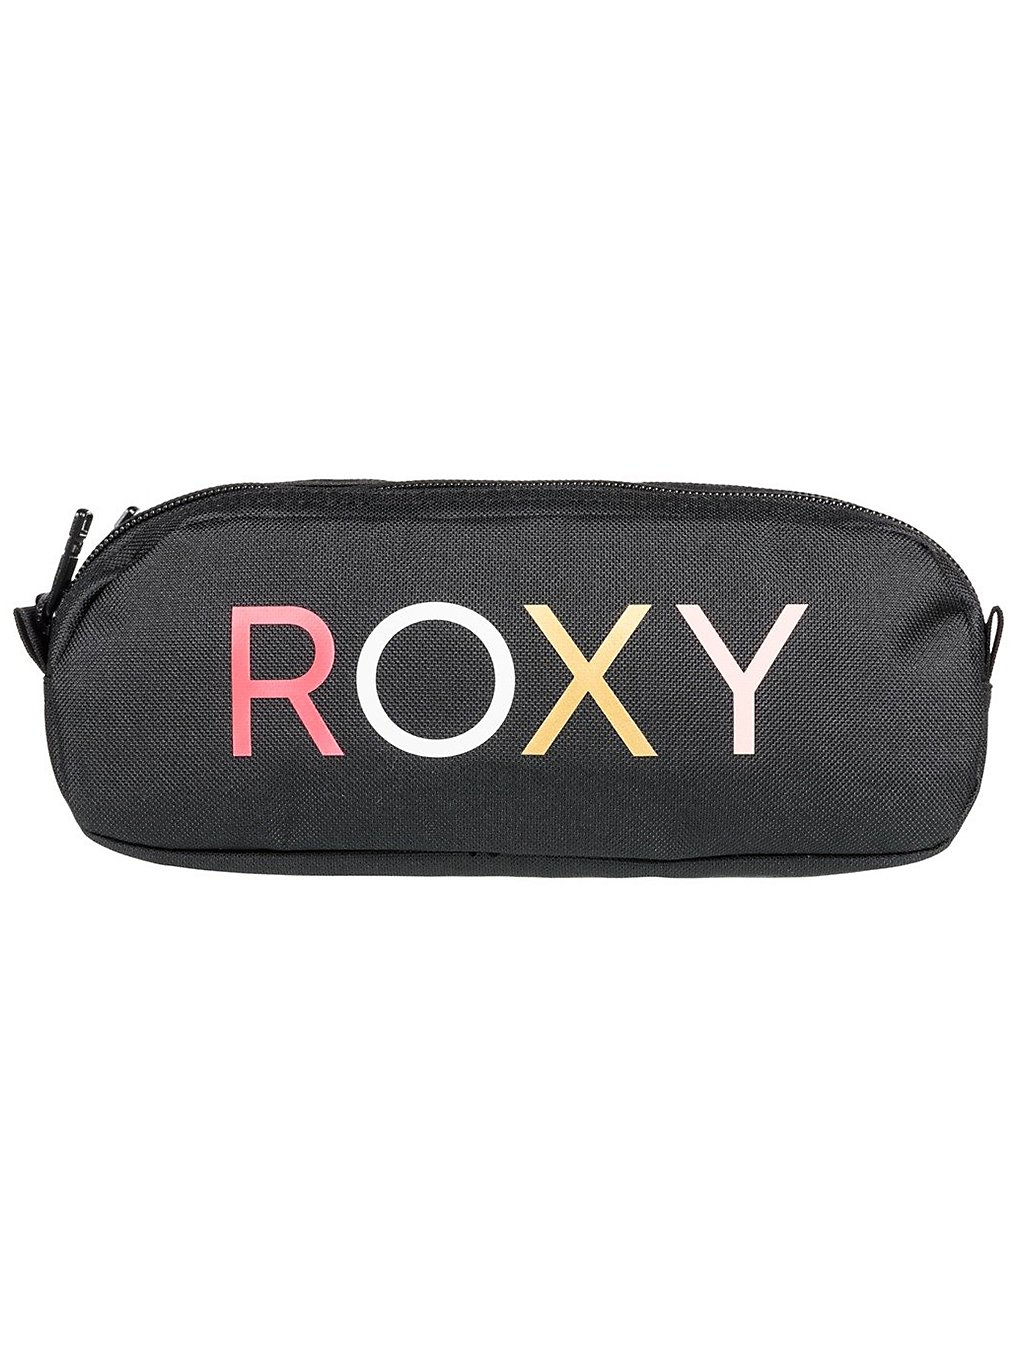 Roxy Da Rock Solid Pencil Case anthracite